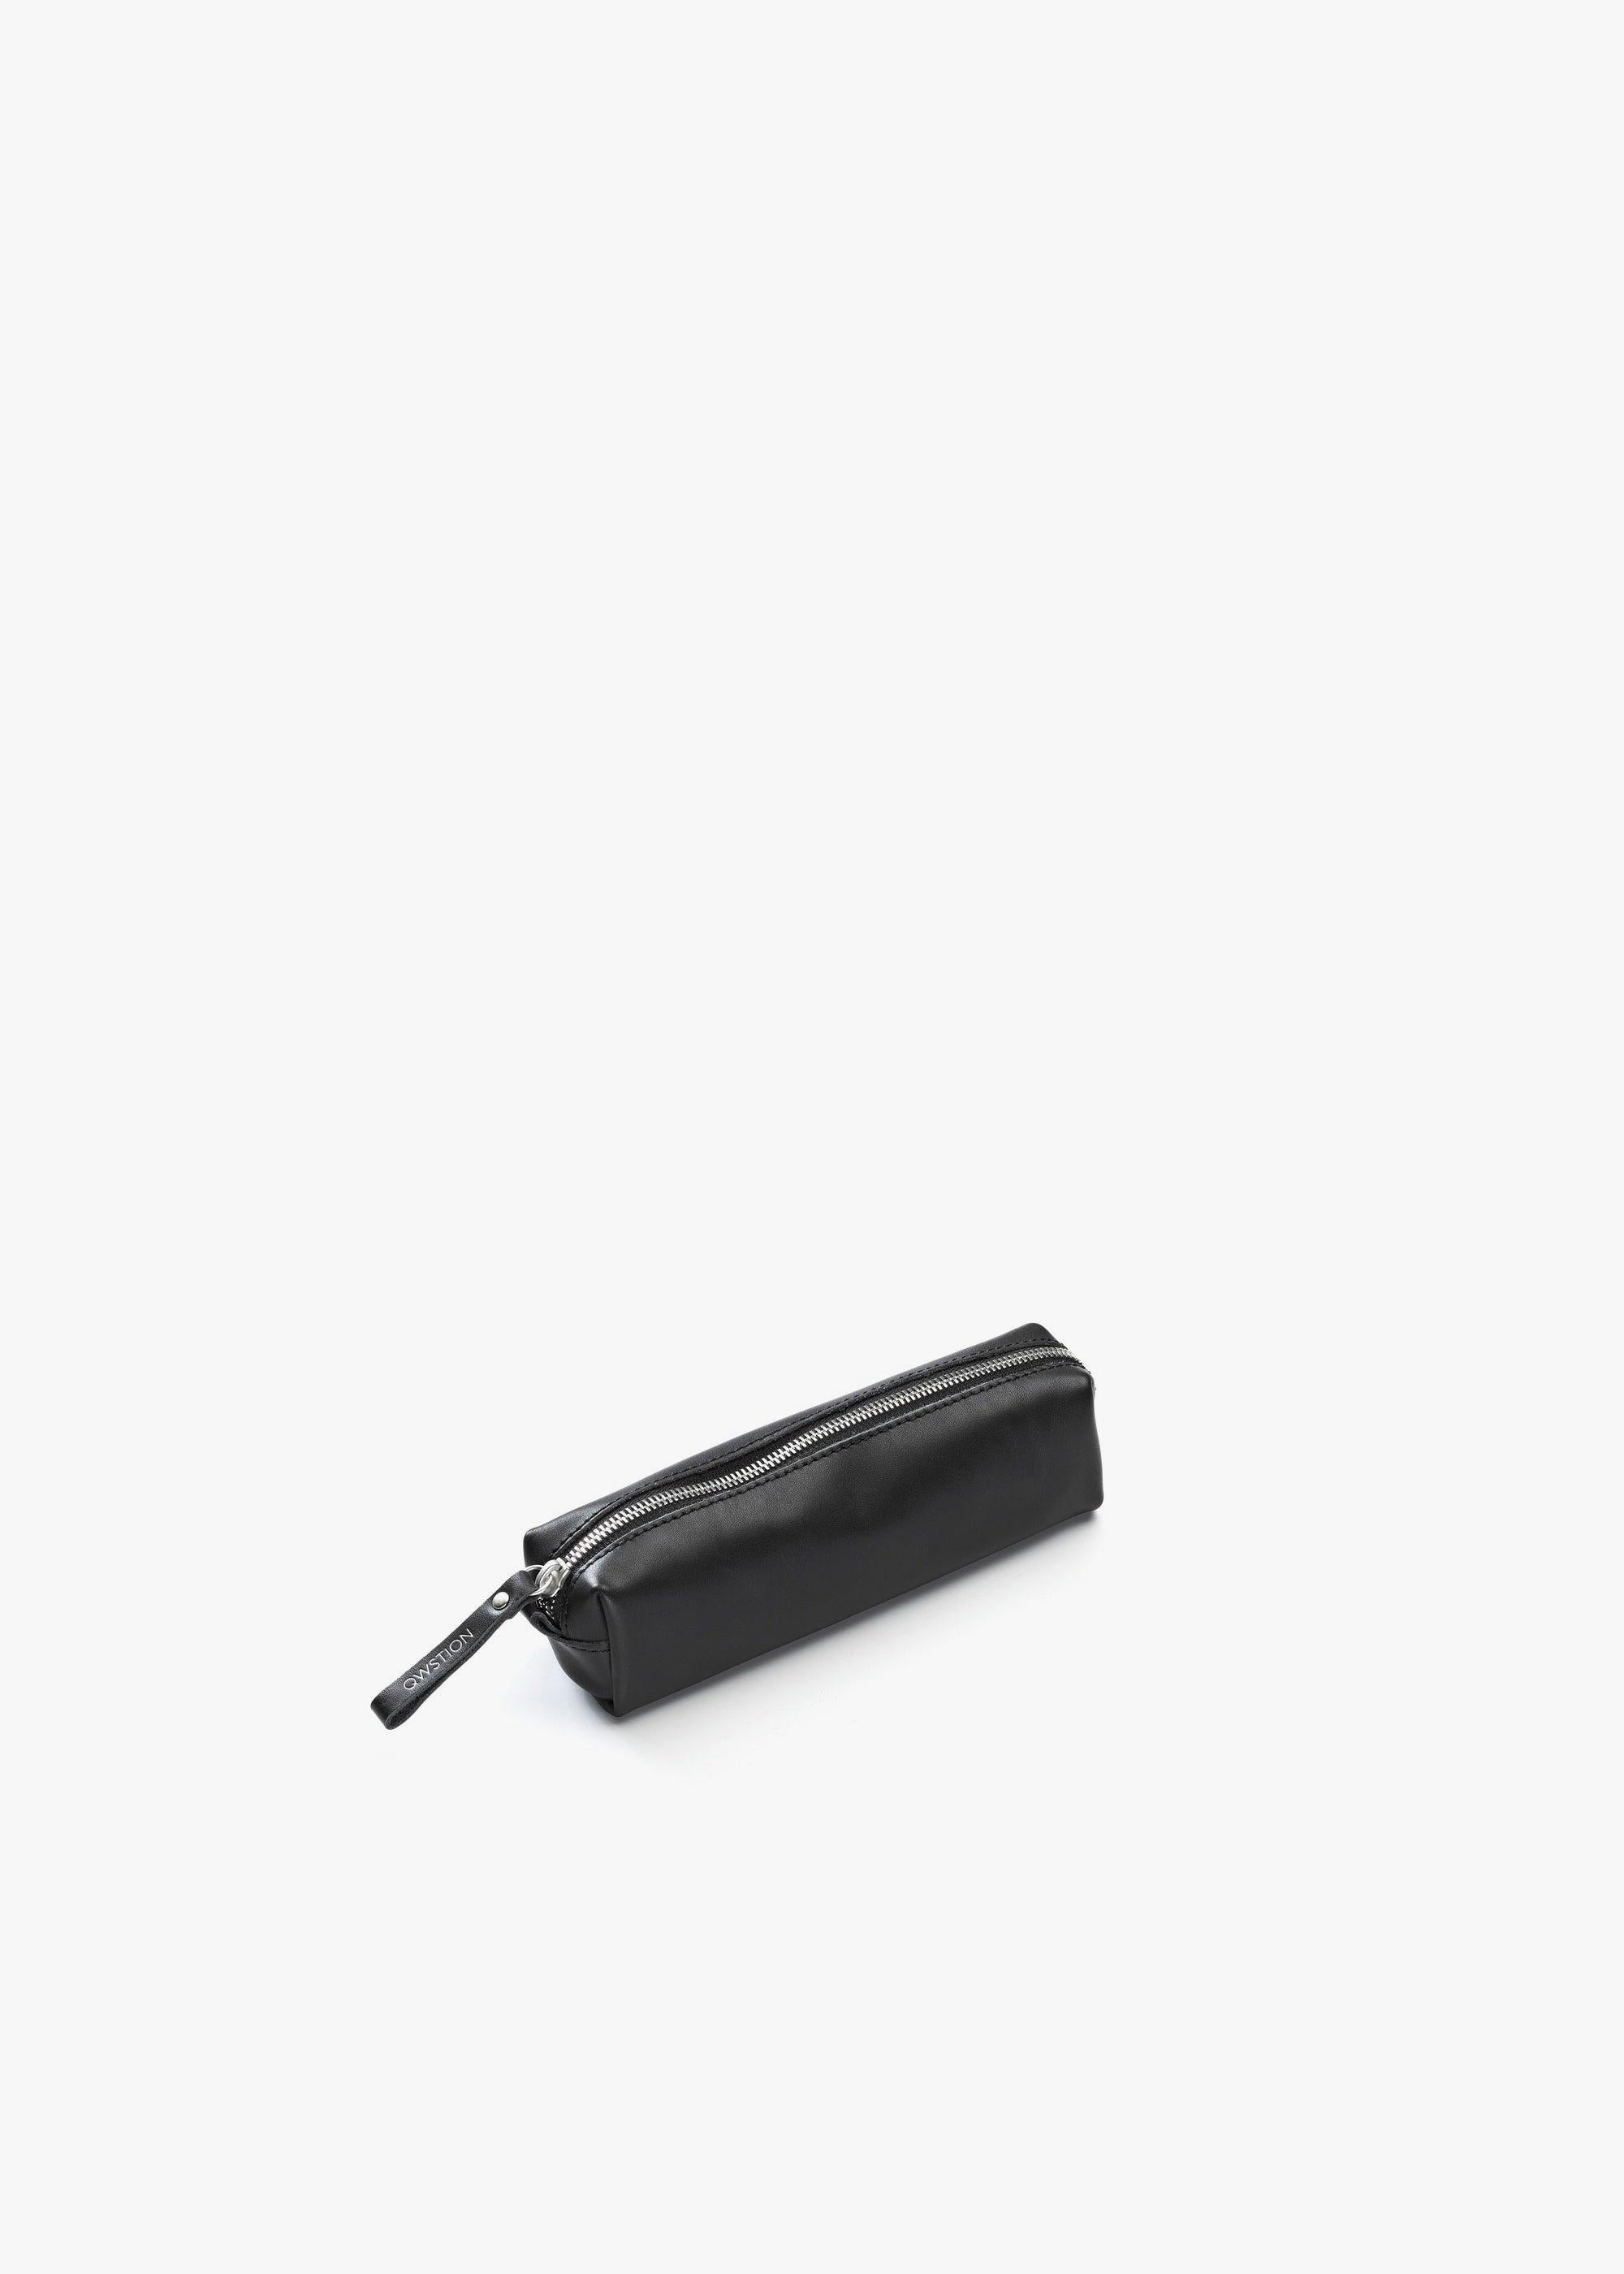 Pencil Pouch – Black Leather Canvas